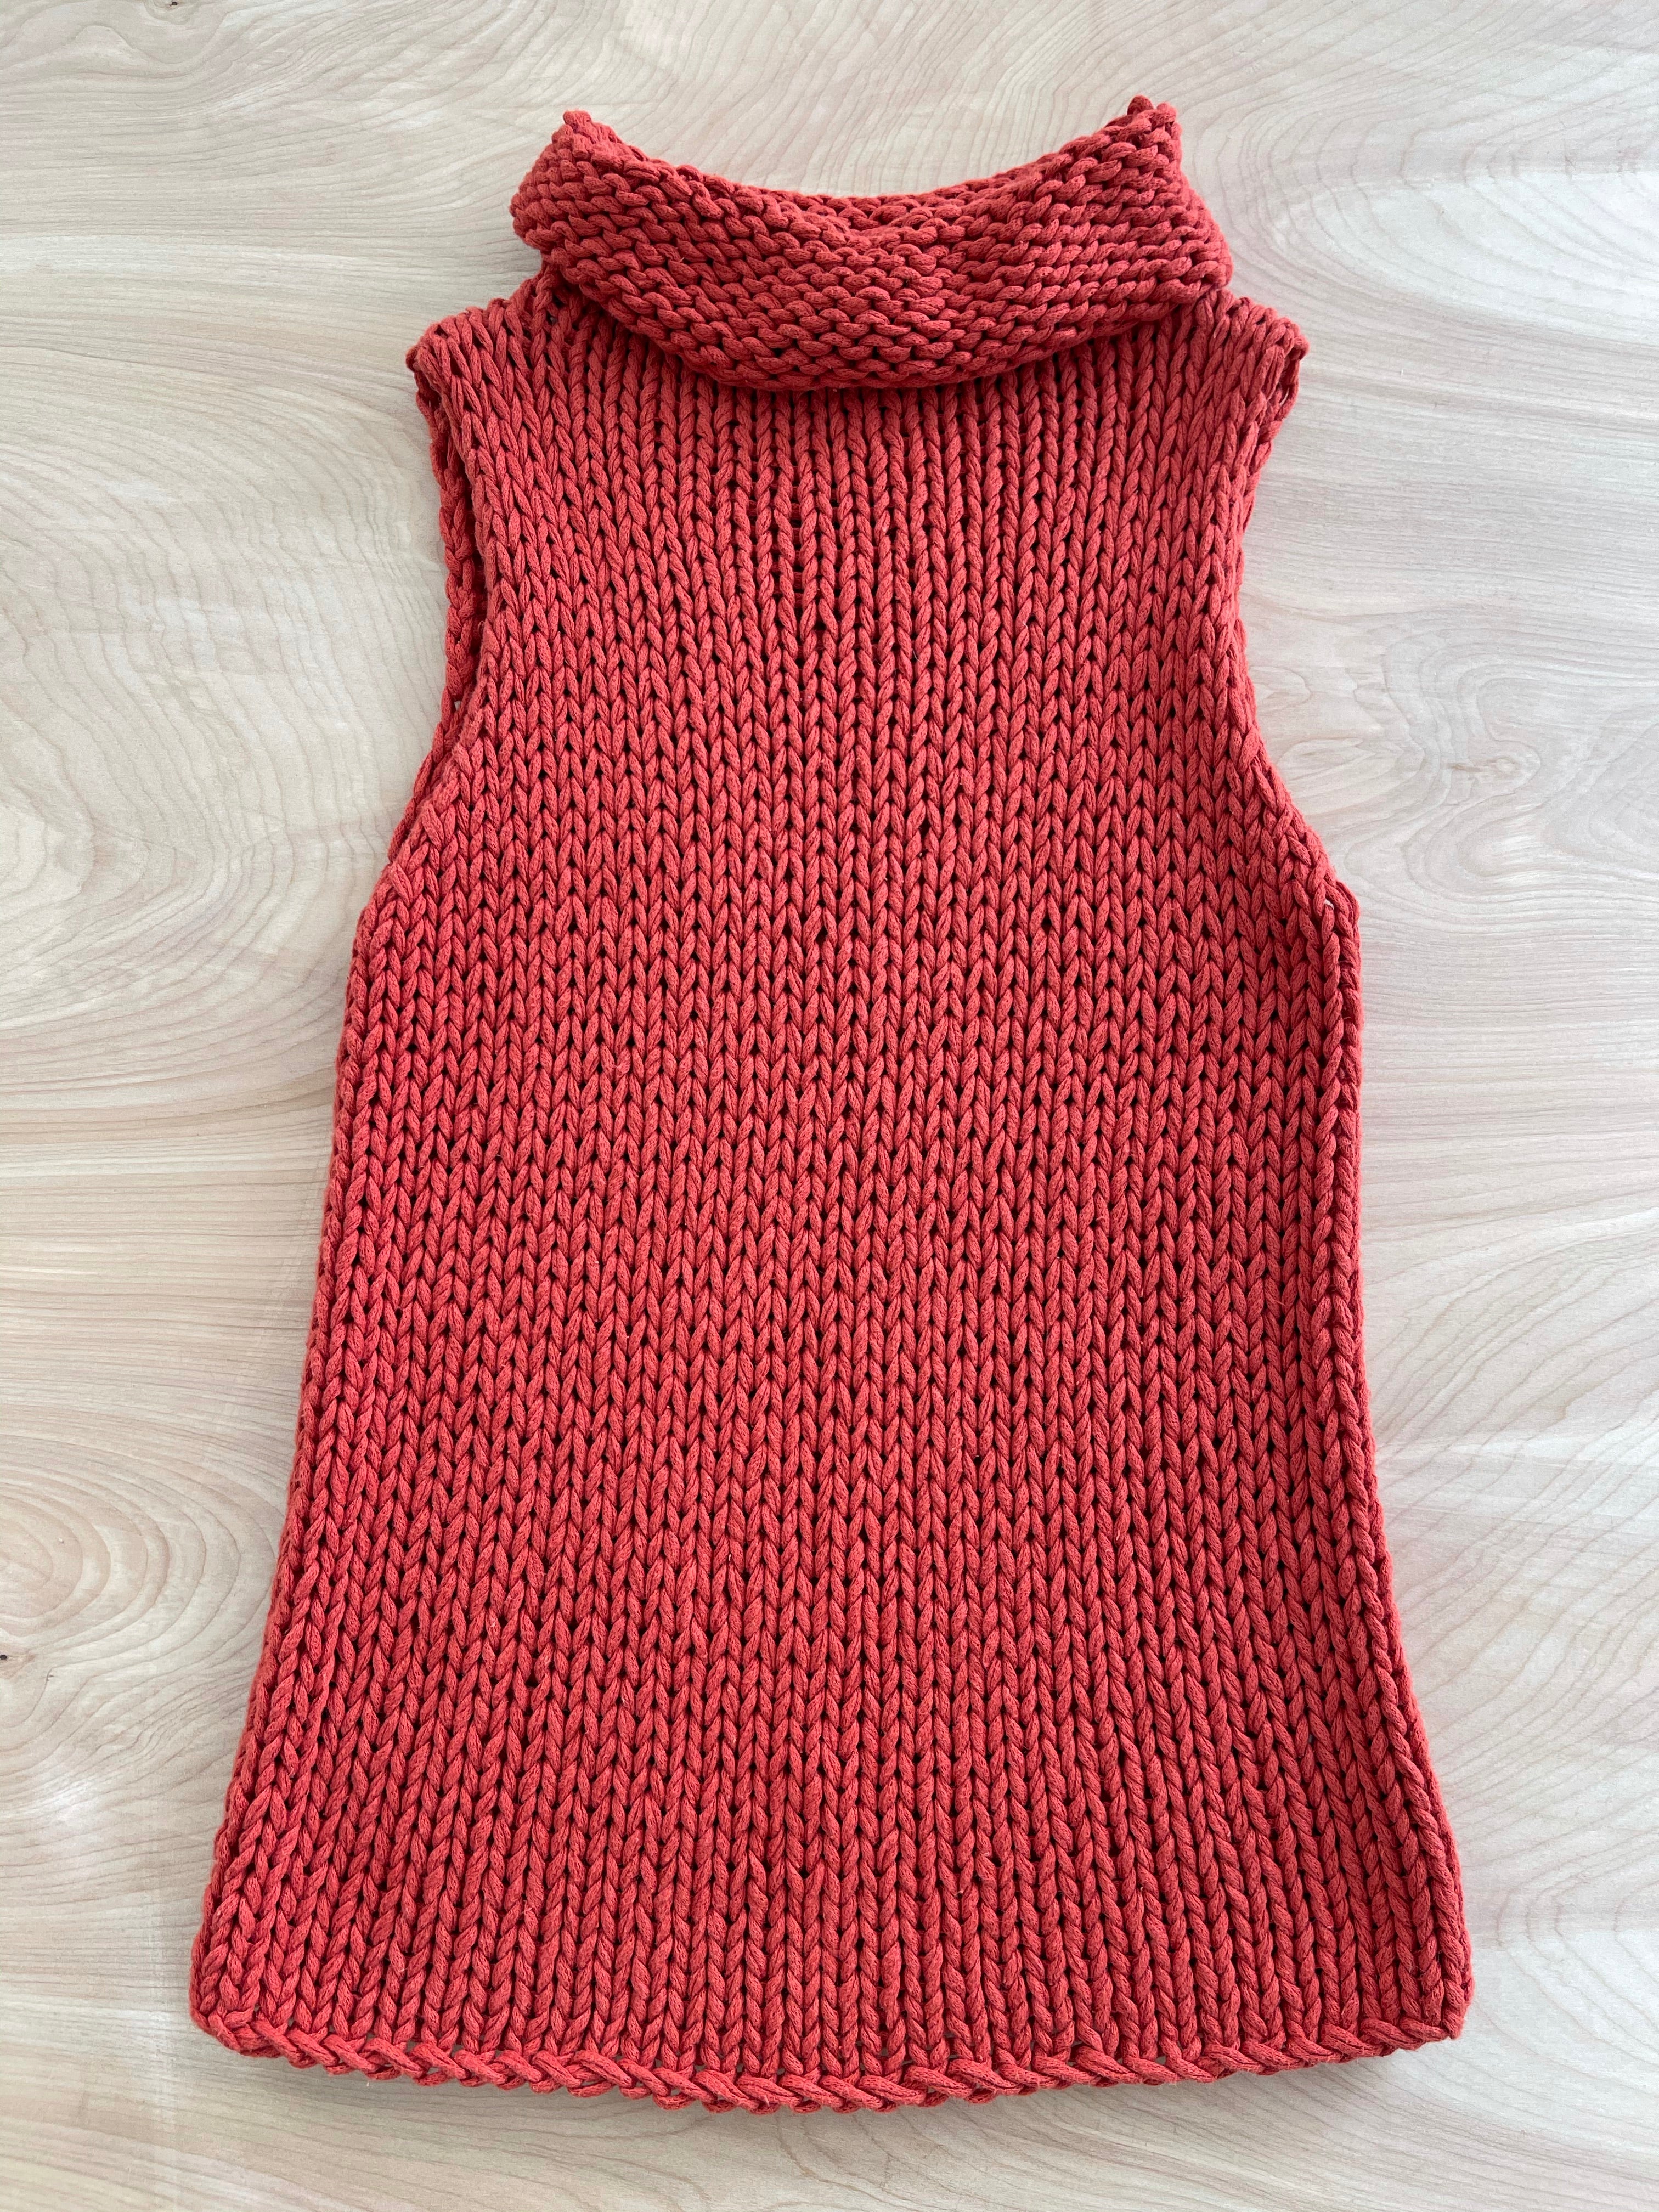 Turn Knit On Sleeveless Sweater